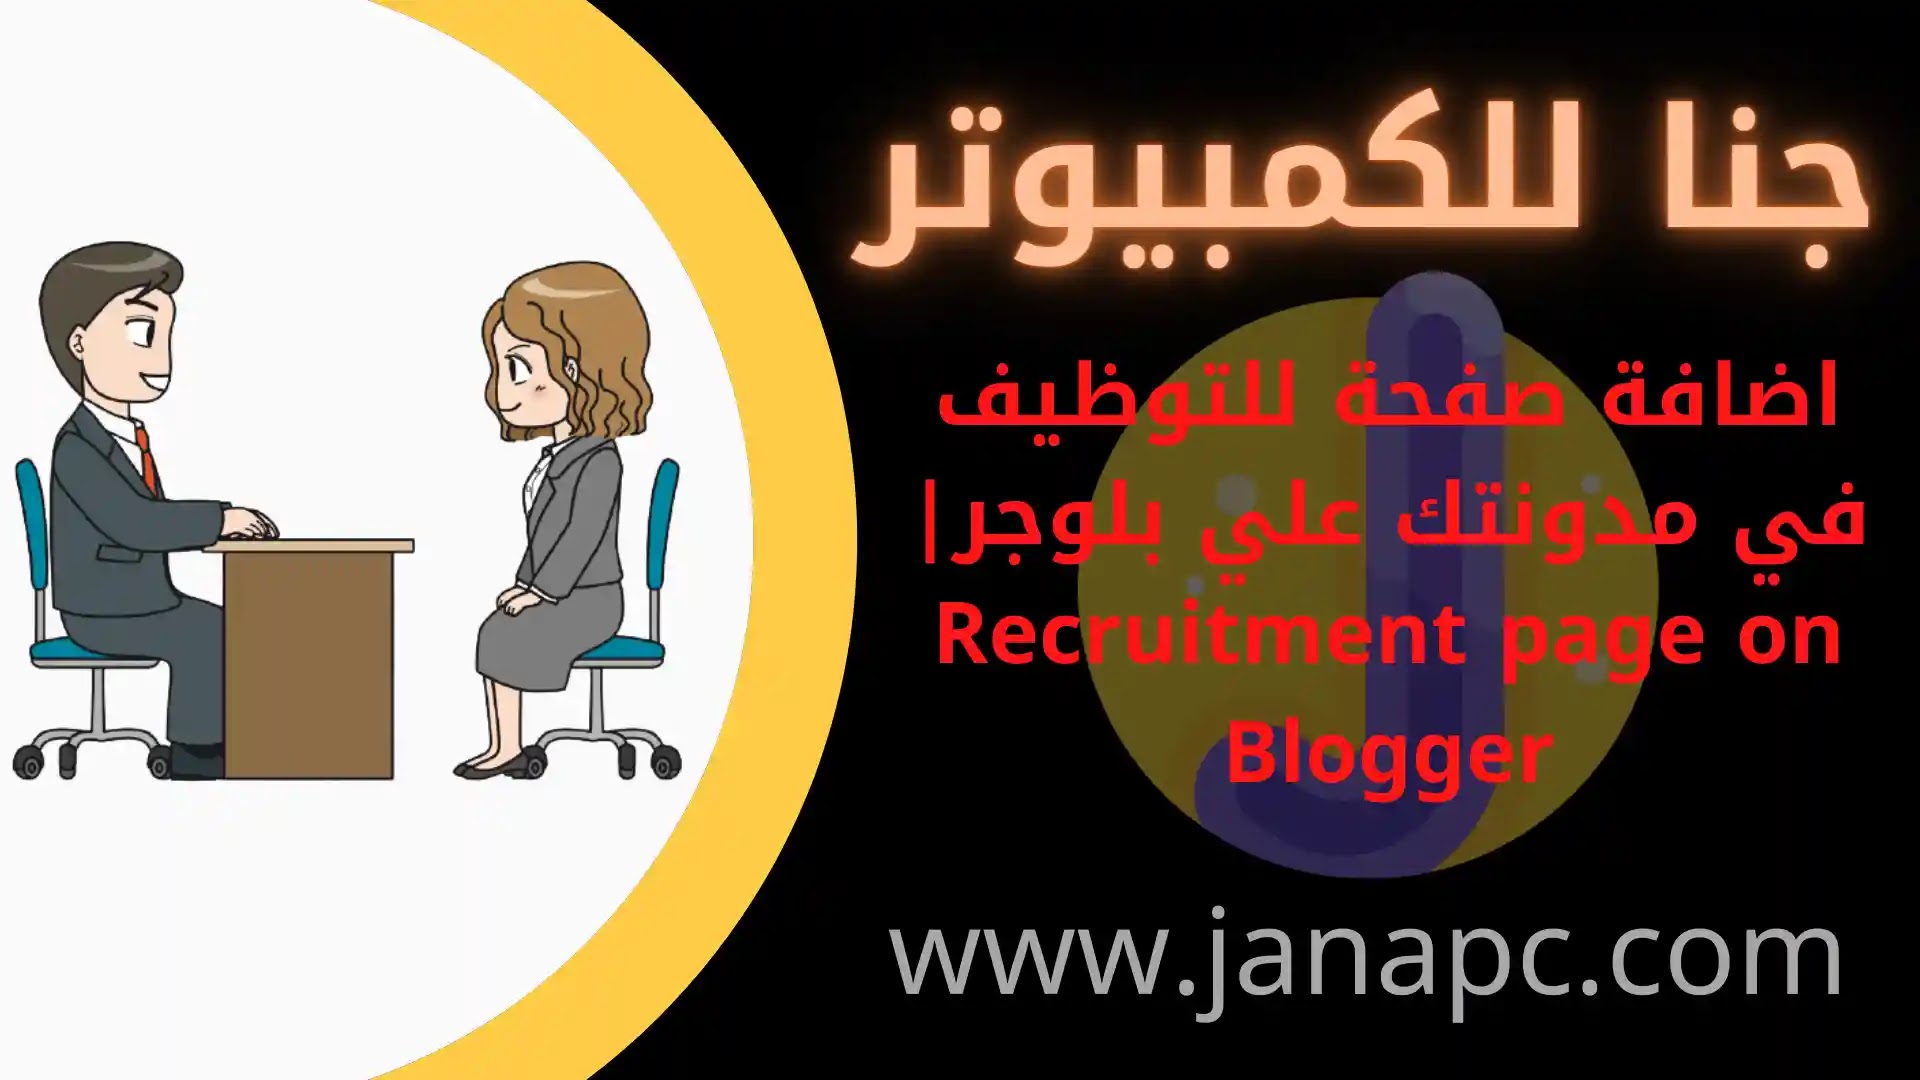 اضافة صفحة للتوظيف في مدونتك علي بلوجر Recruitment page on Blogger